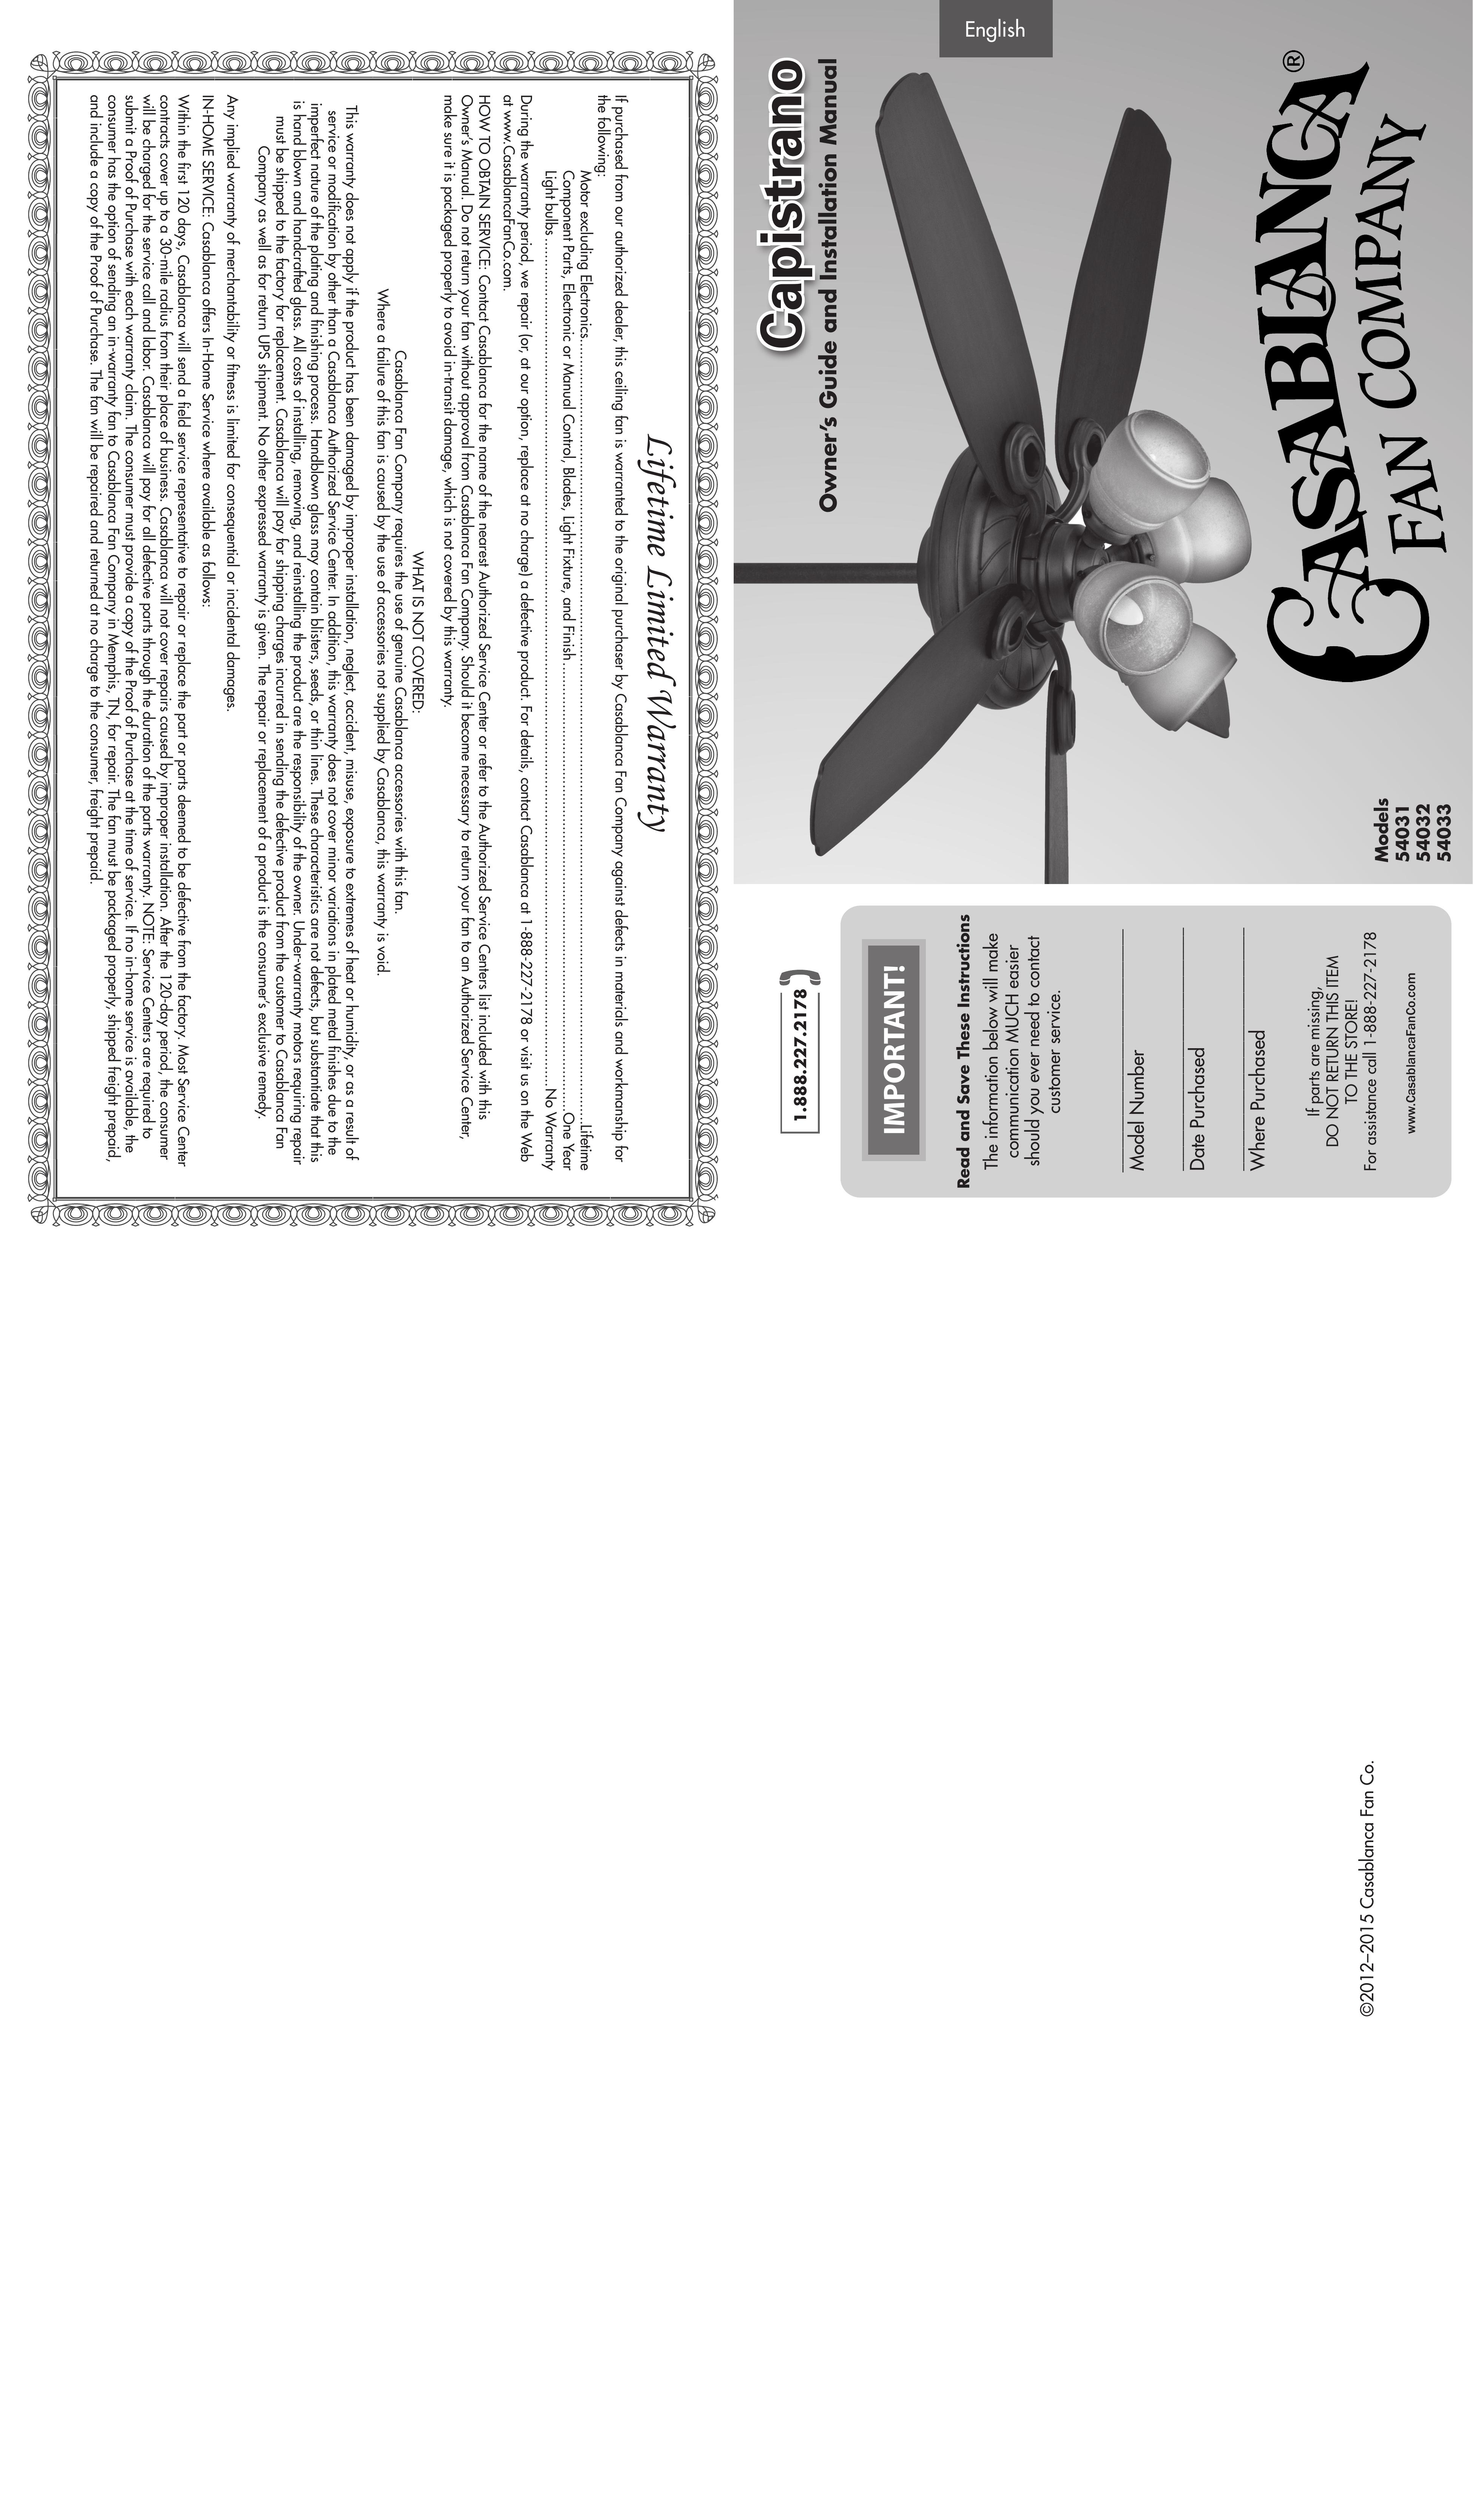 Casablanca Fan Company 54031 Outdoor Ceiling Fan User Manual